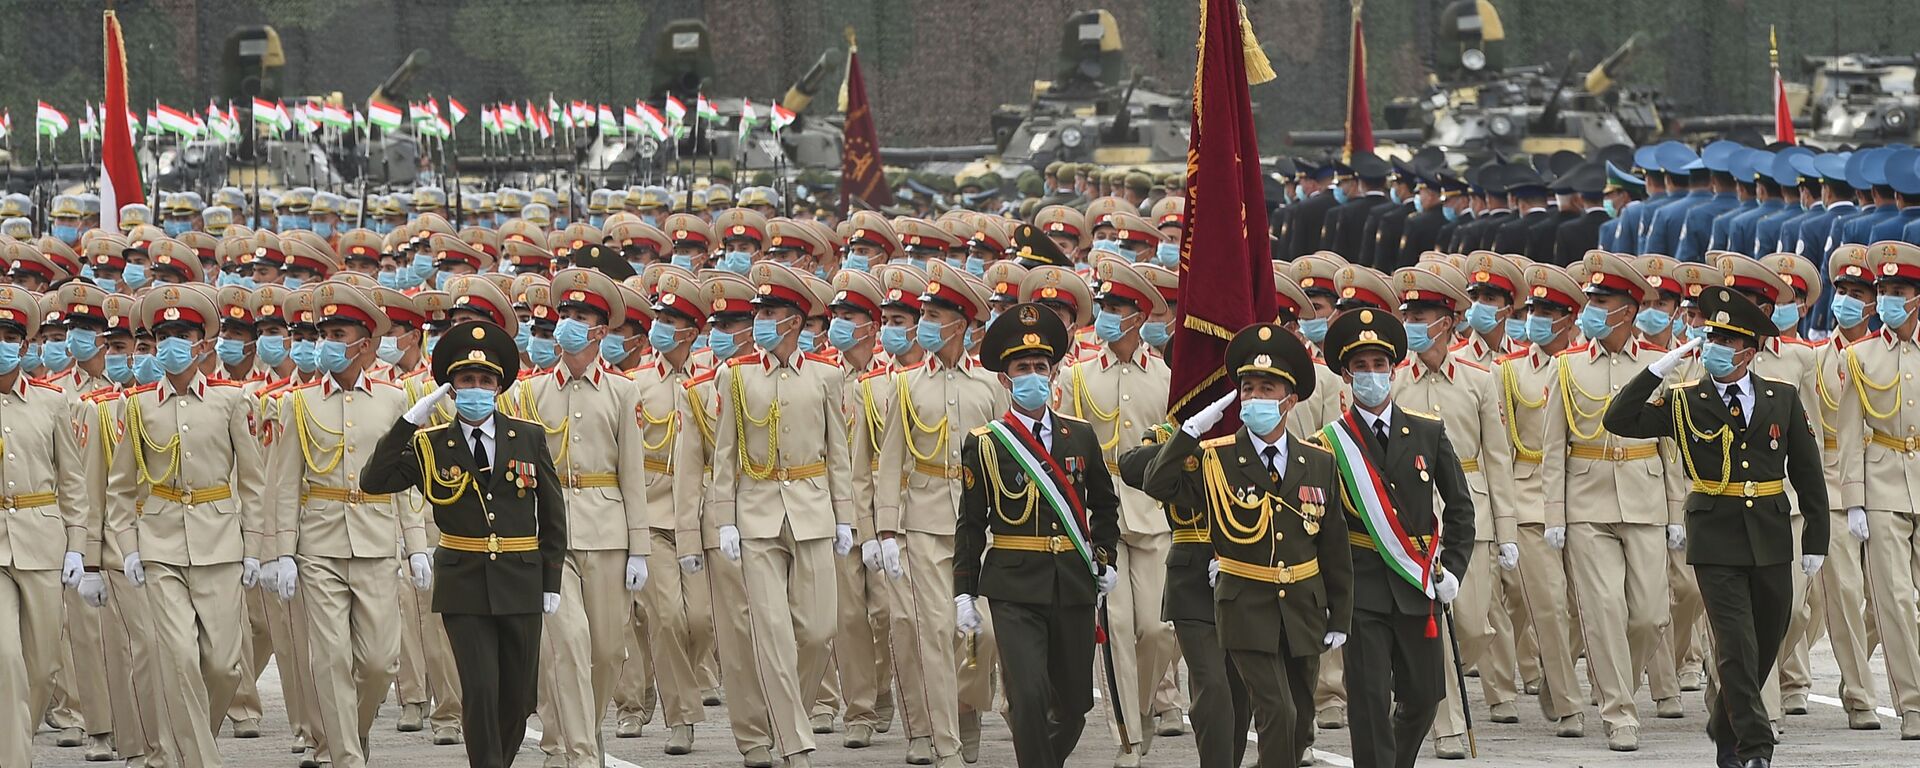 Военный парад национальной гвардии Таджикистана - Sputnik Таджикистан, 1920, 04.02.2021